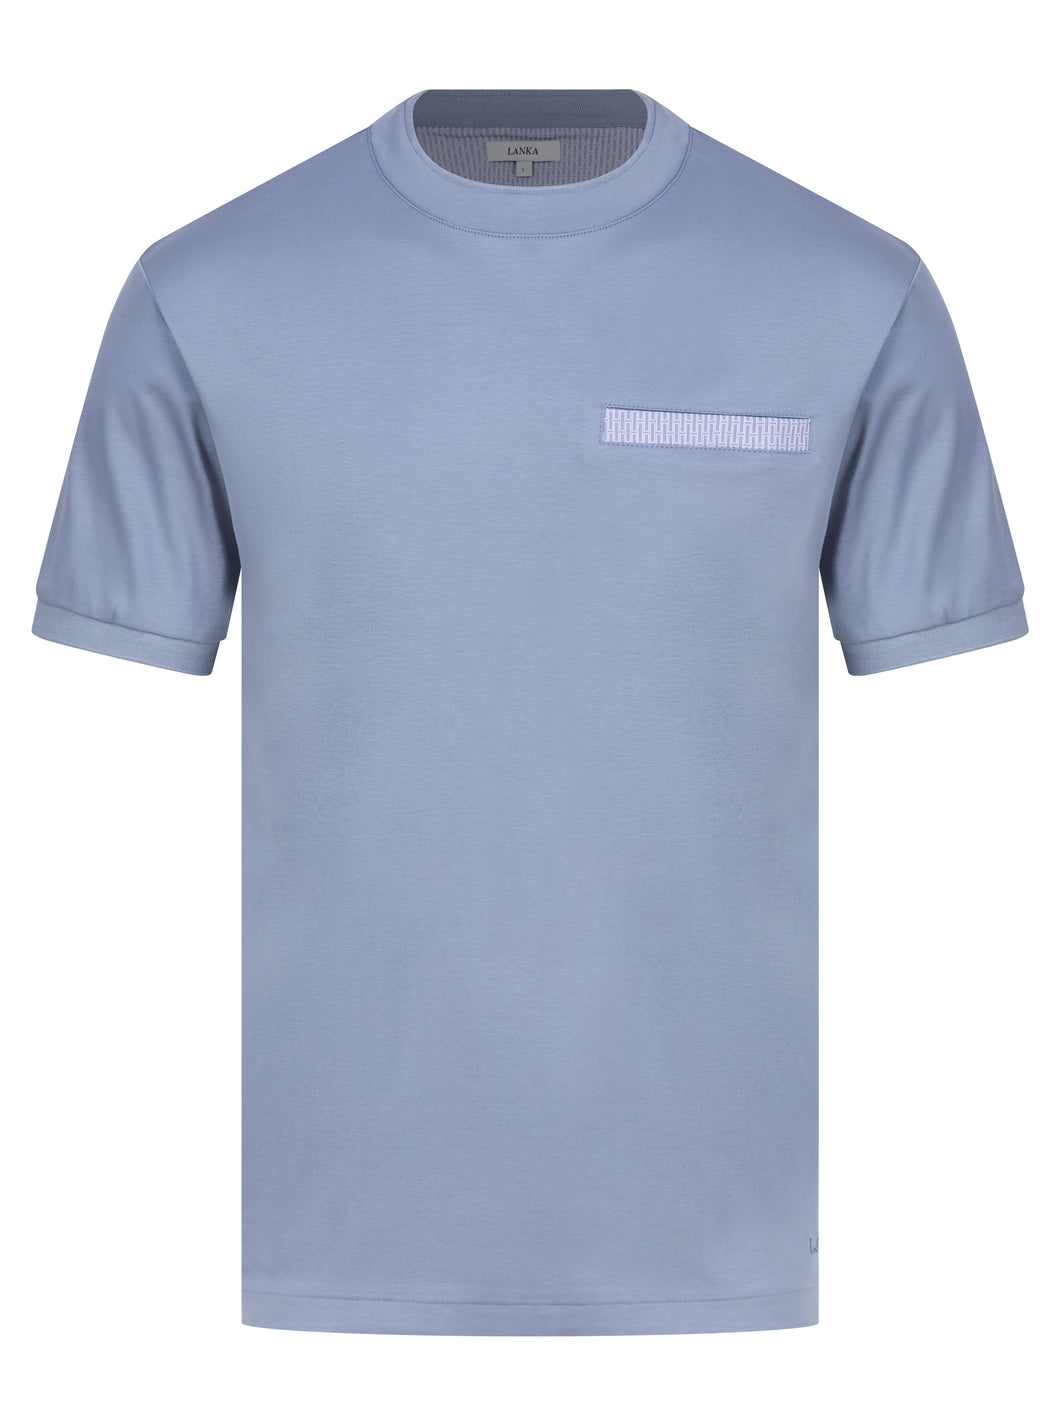 Lanka T Shirt Blue